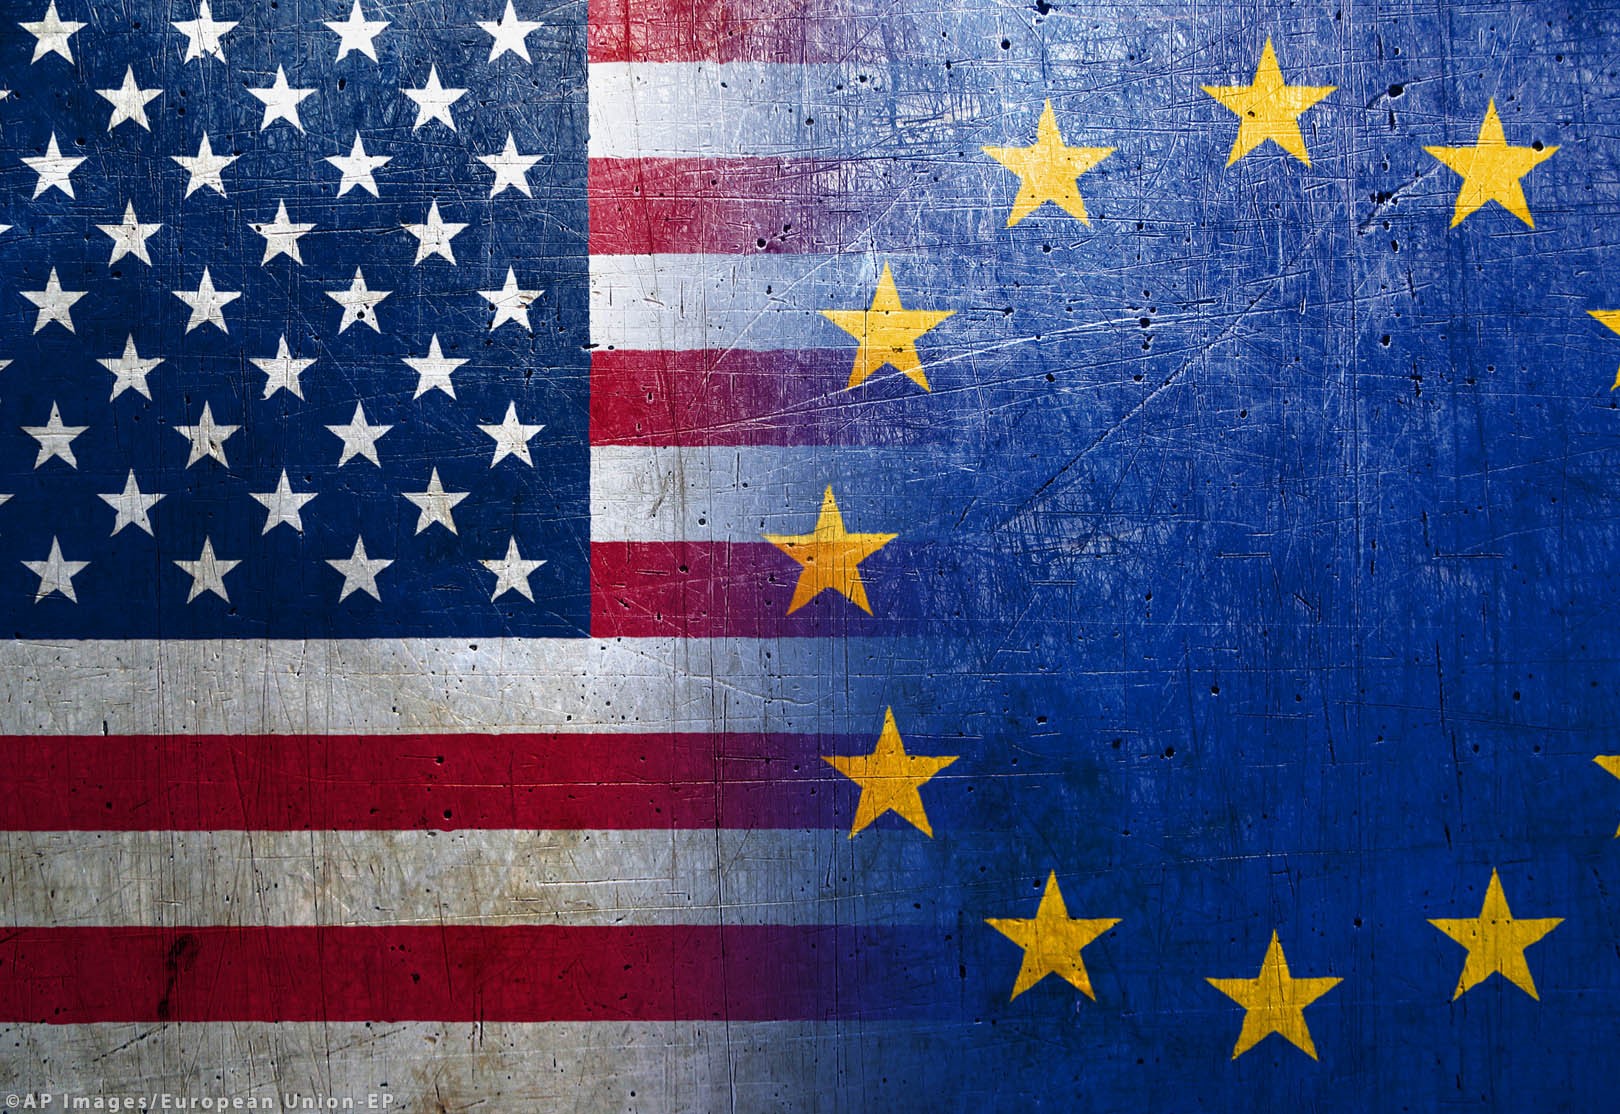 US, EU settle to soften tariffs on aluminium and steel